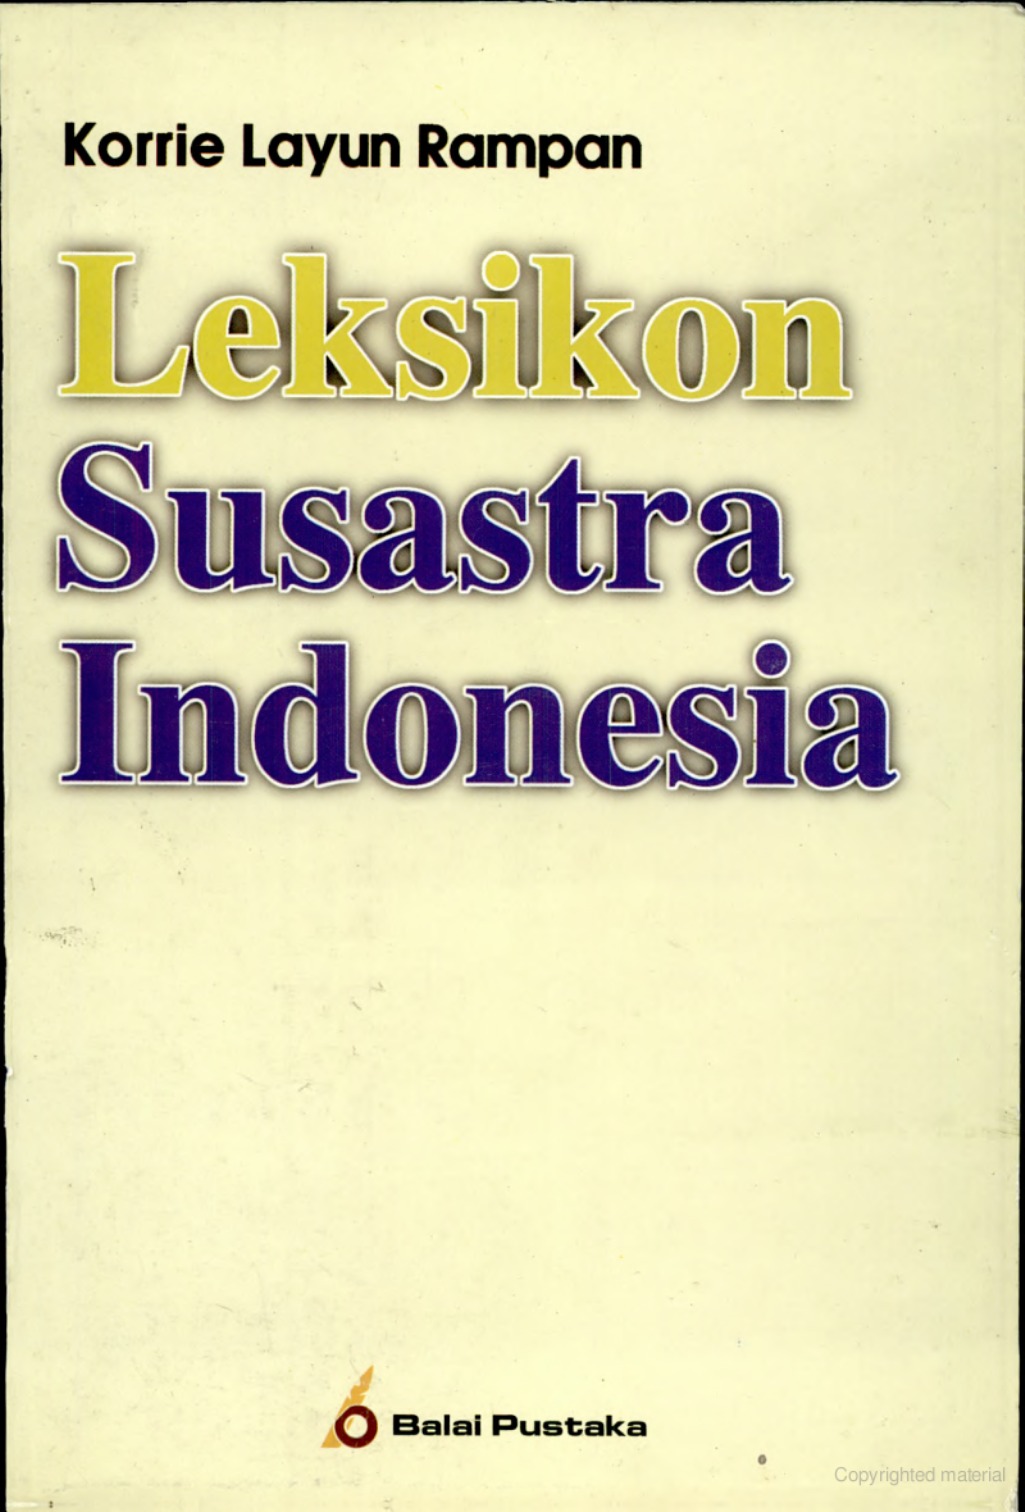 Leksikon susastra Indonesia